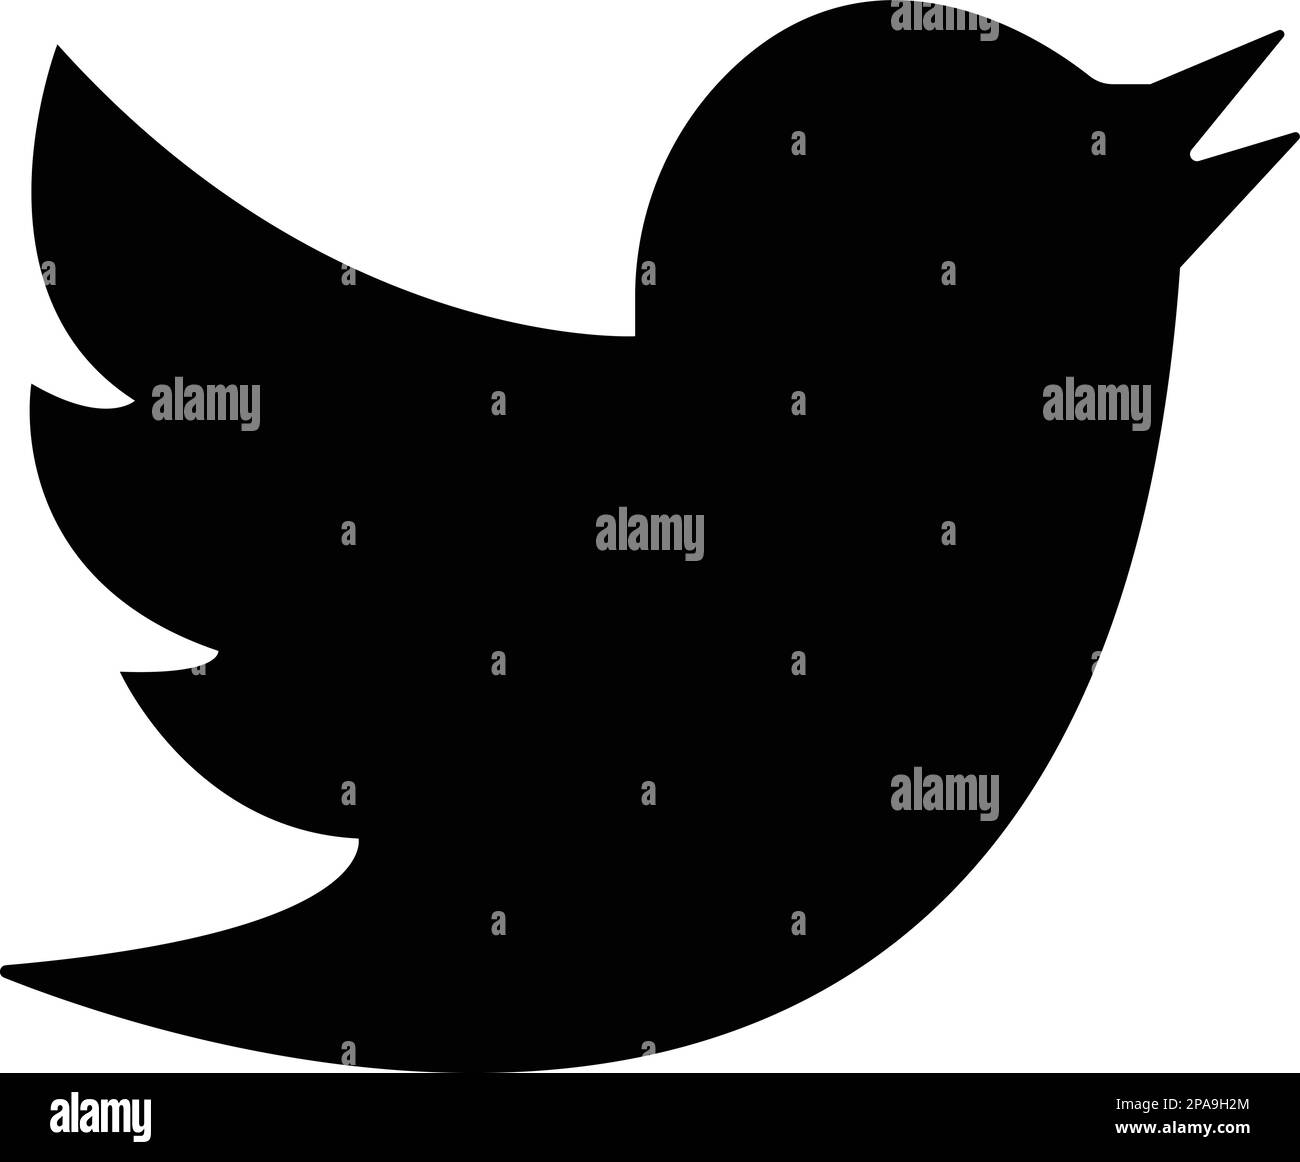 Logo Twitter Bird. Logotype d'icône de médias sociaux réaliste. Twitter - icône de bouton de réseaux sociaux populaires, messagerie instantanée Illustration de Vecteur